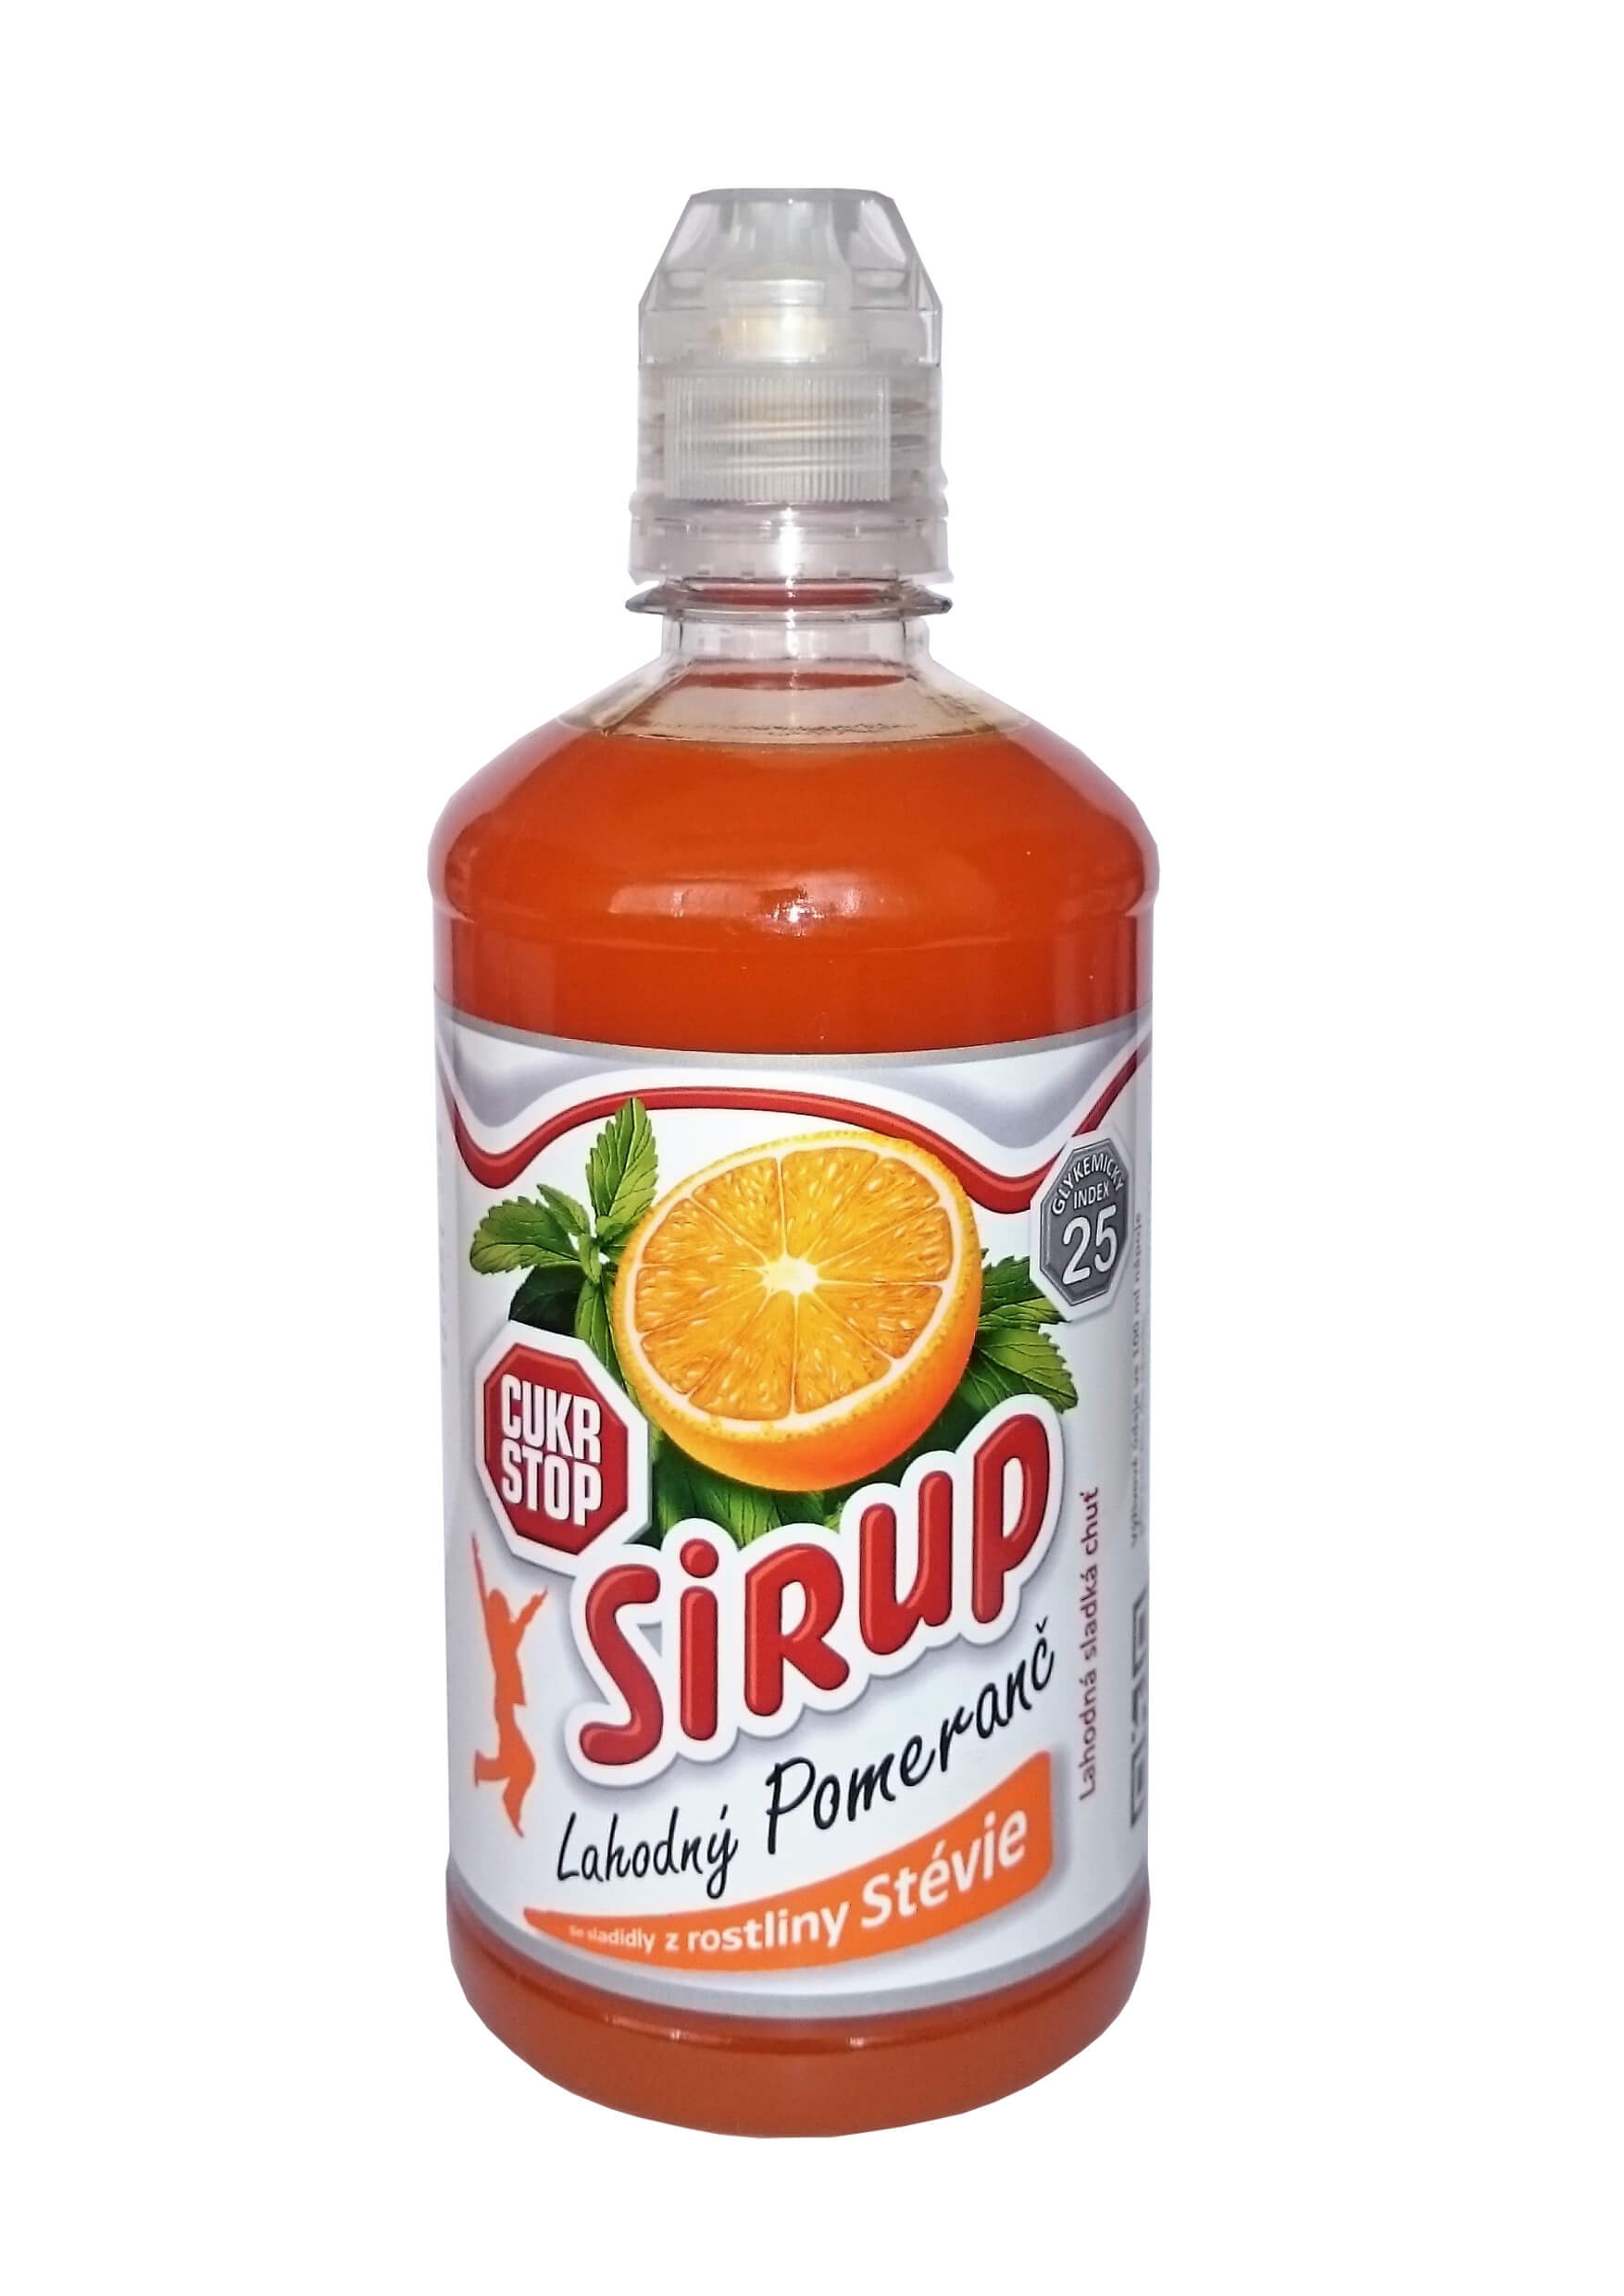 CukrStop Sirup se sladidly z rostliny stévie - lahodný pomeranč 650 g